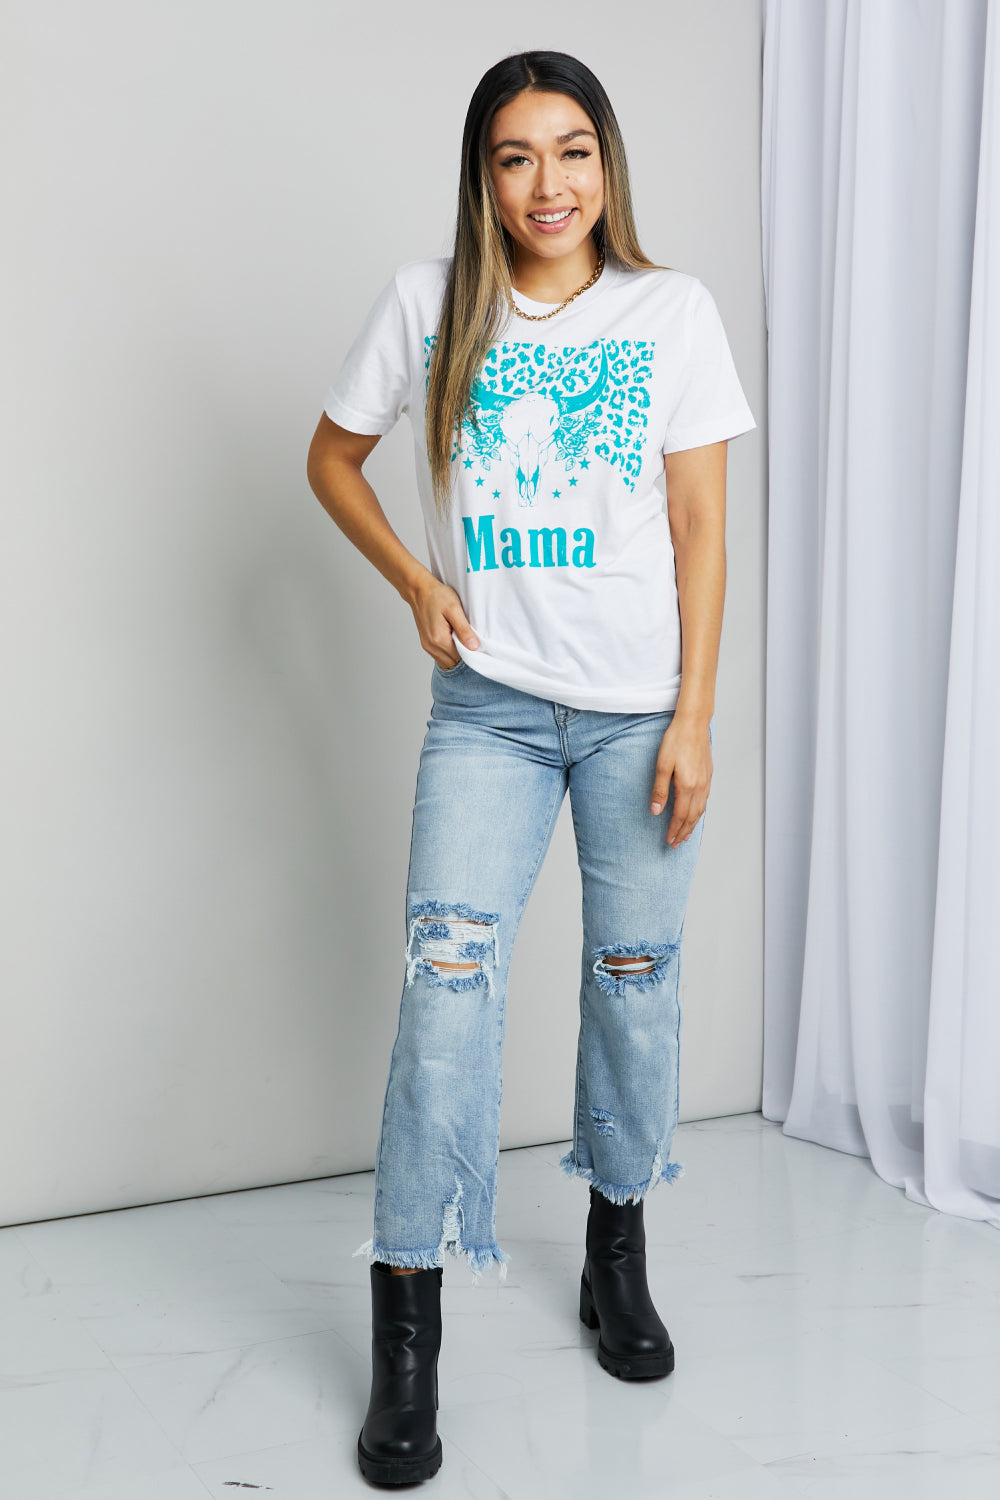 mineB's Full Size MAMA Animal Print Graphic Tee Shirt OniTakai